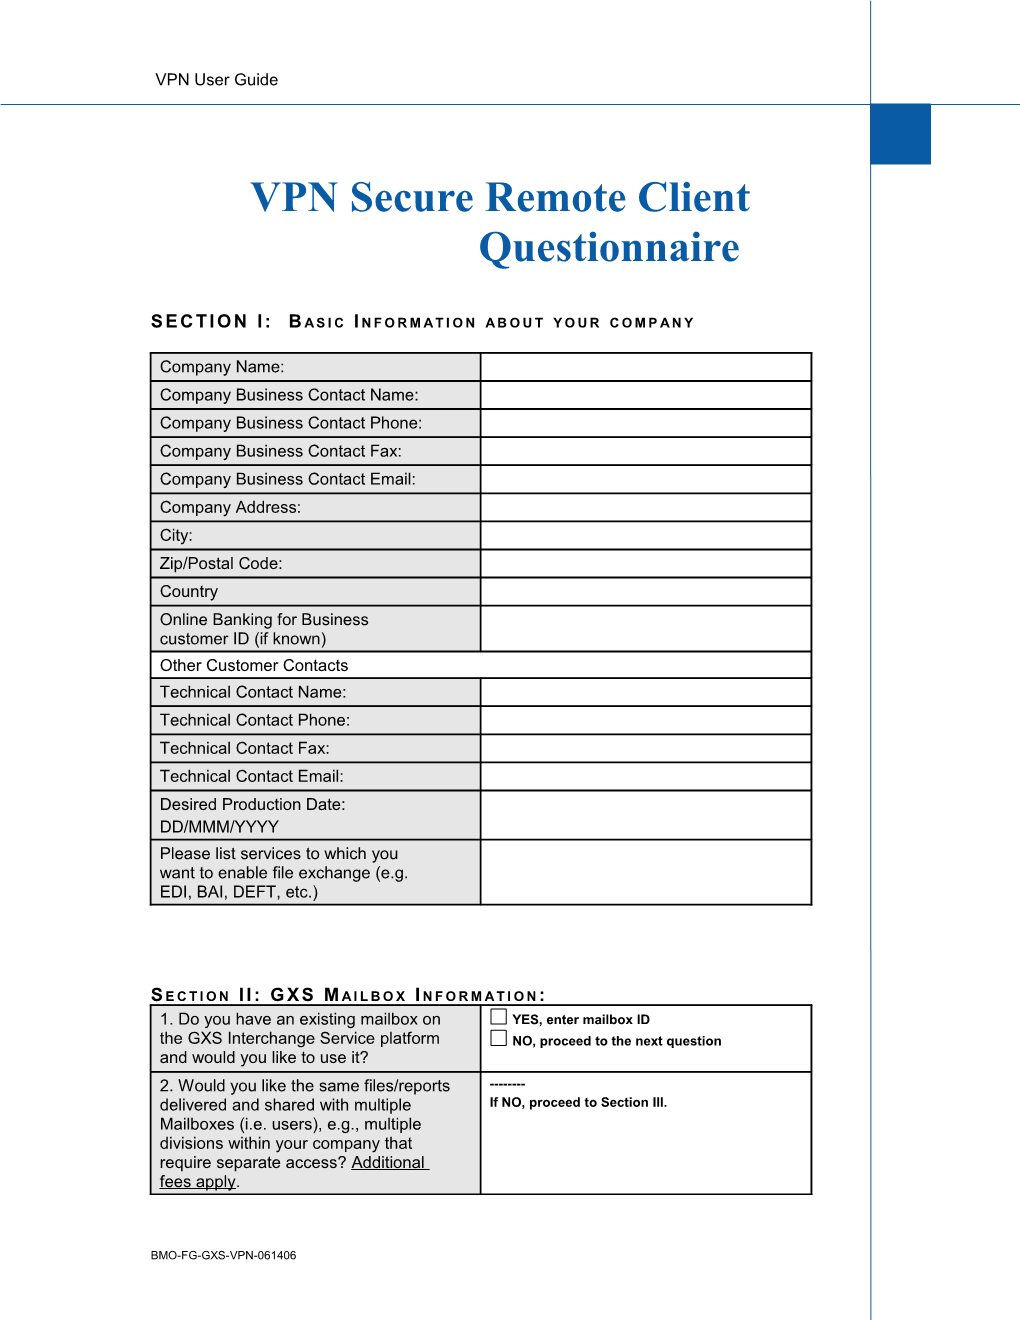 VPN Secure Remote Client Questionnaire